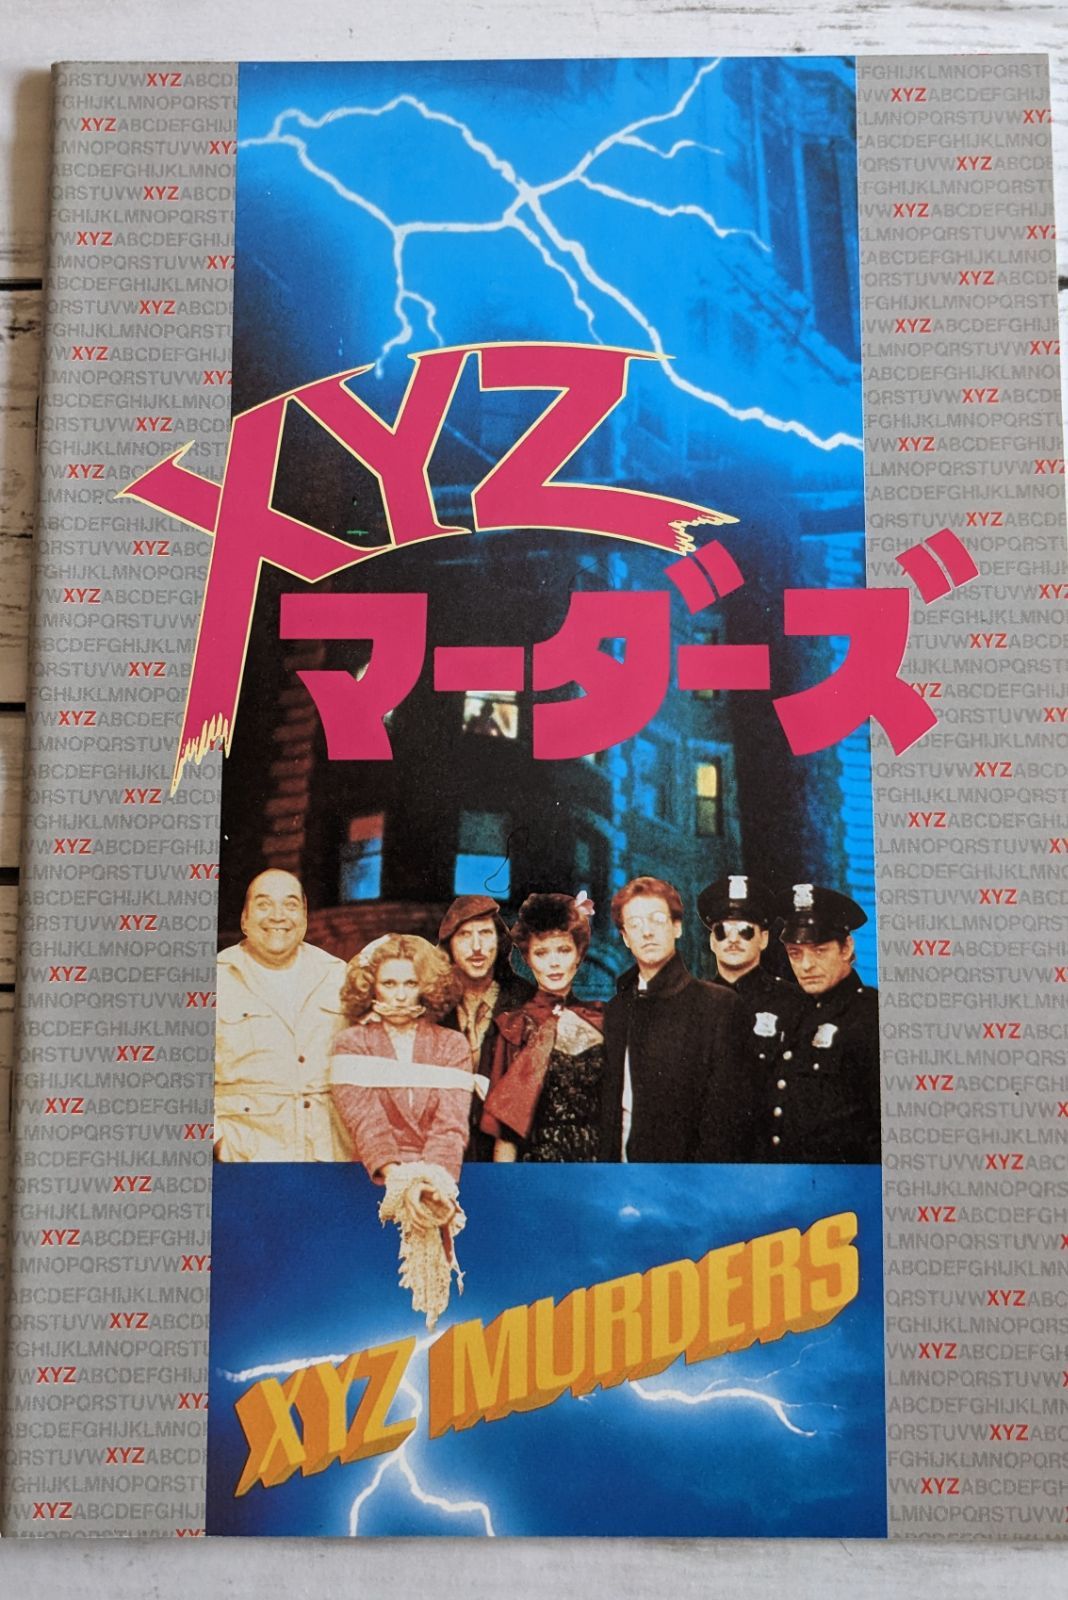 XYZ マーダーズ 映画パンフレット 昭和レトロ - メルカリ